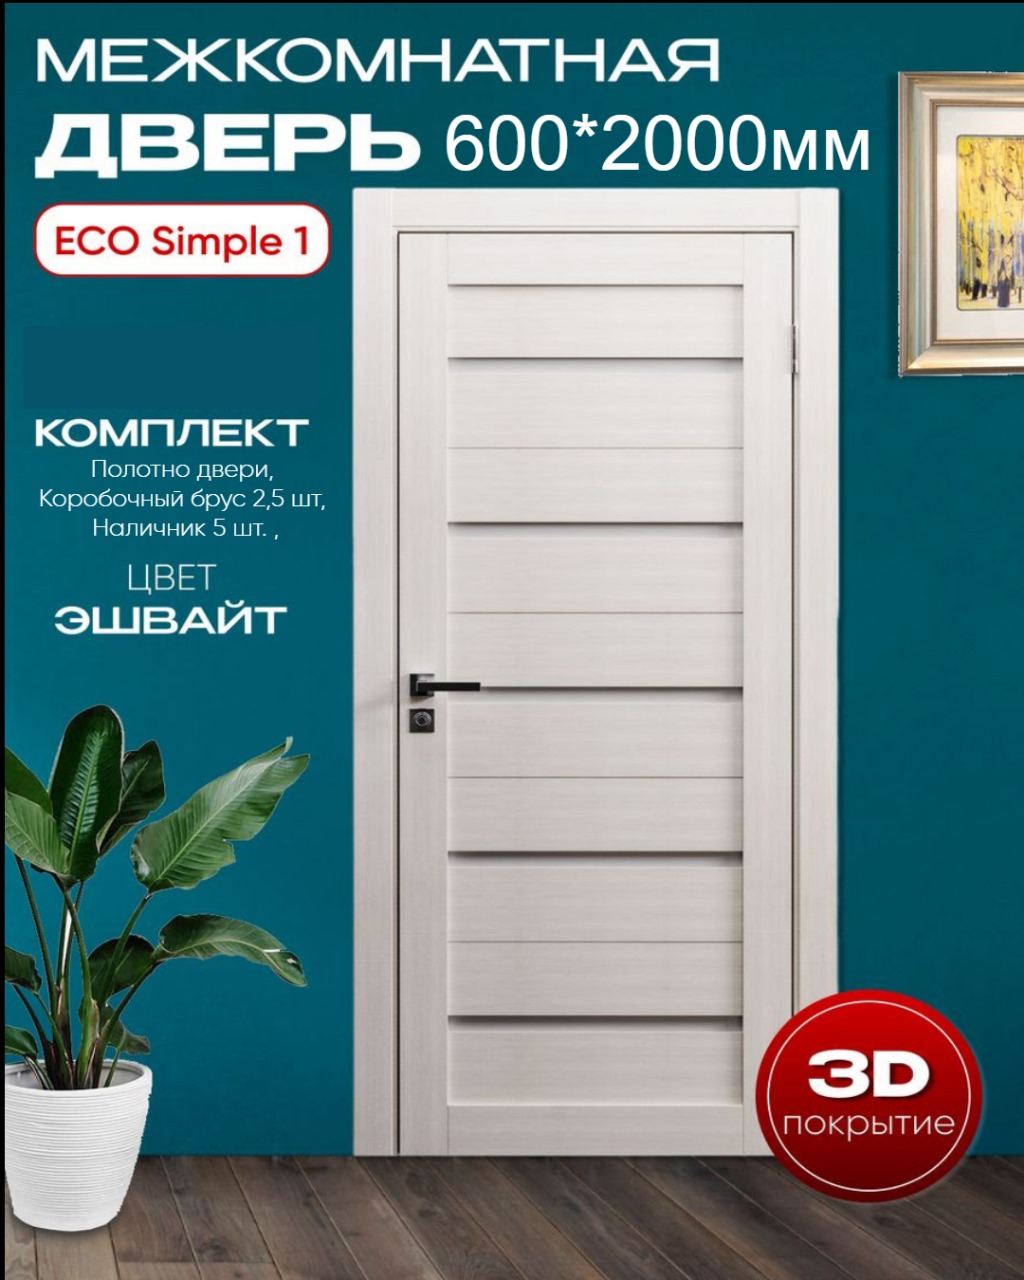 Межкомнатная дверь ВДК ЭКО Simple 1,эшвайт, 60x200, КОМПЛЕКТ купить в интернет-магазине, цены на Мегамаркет